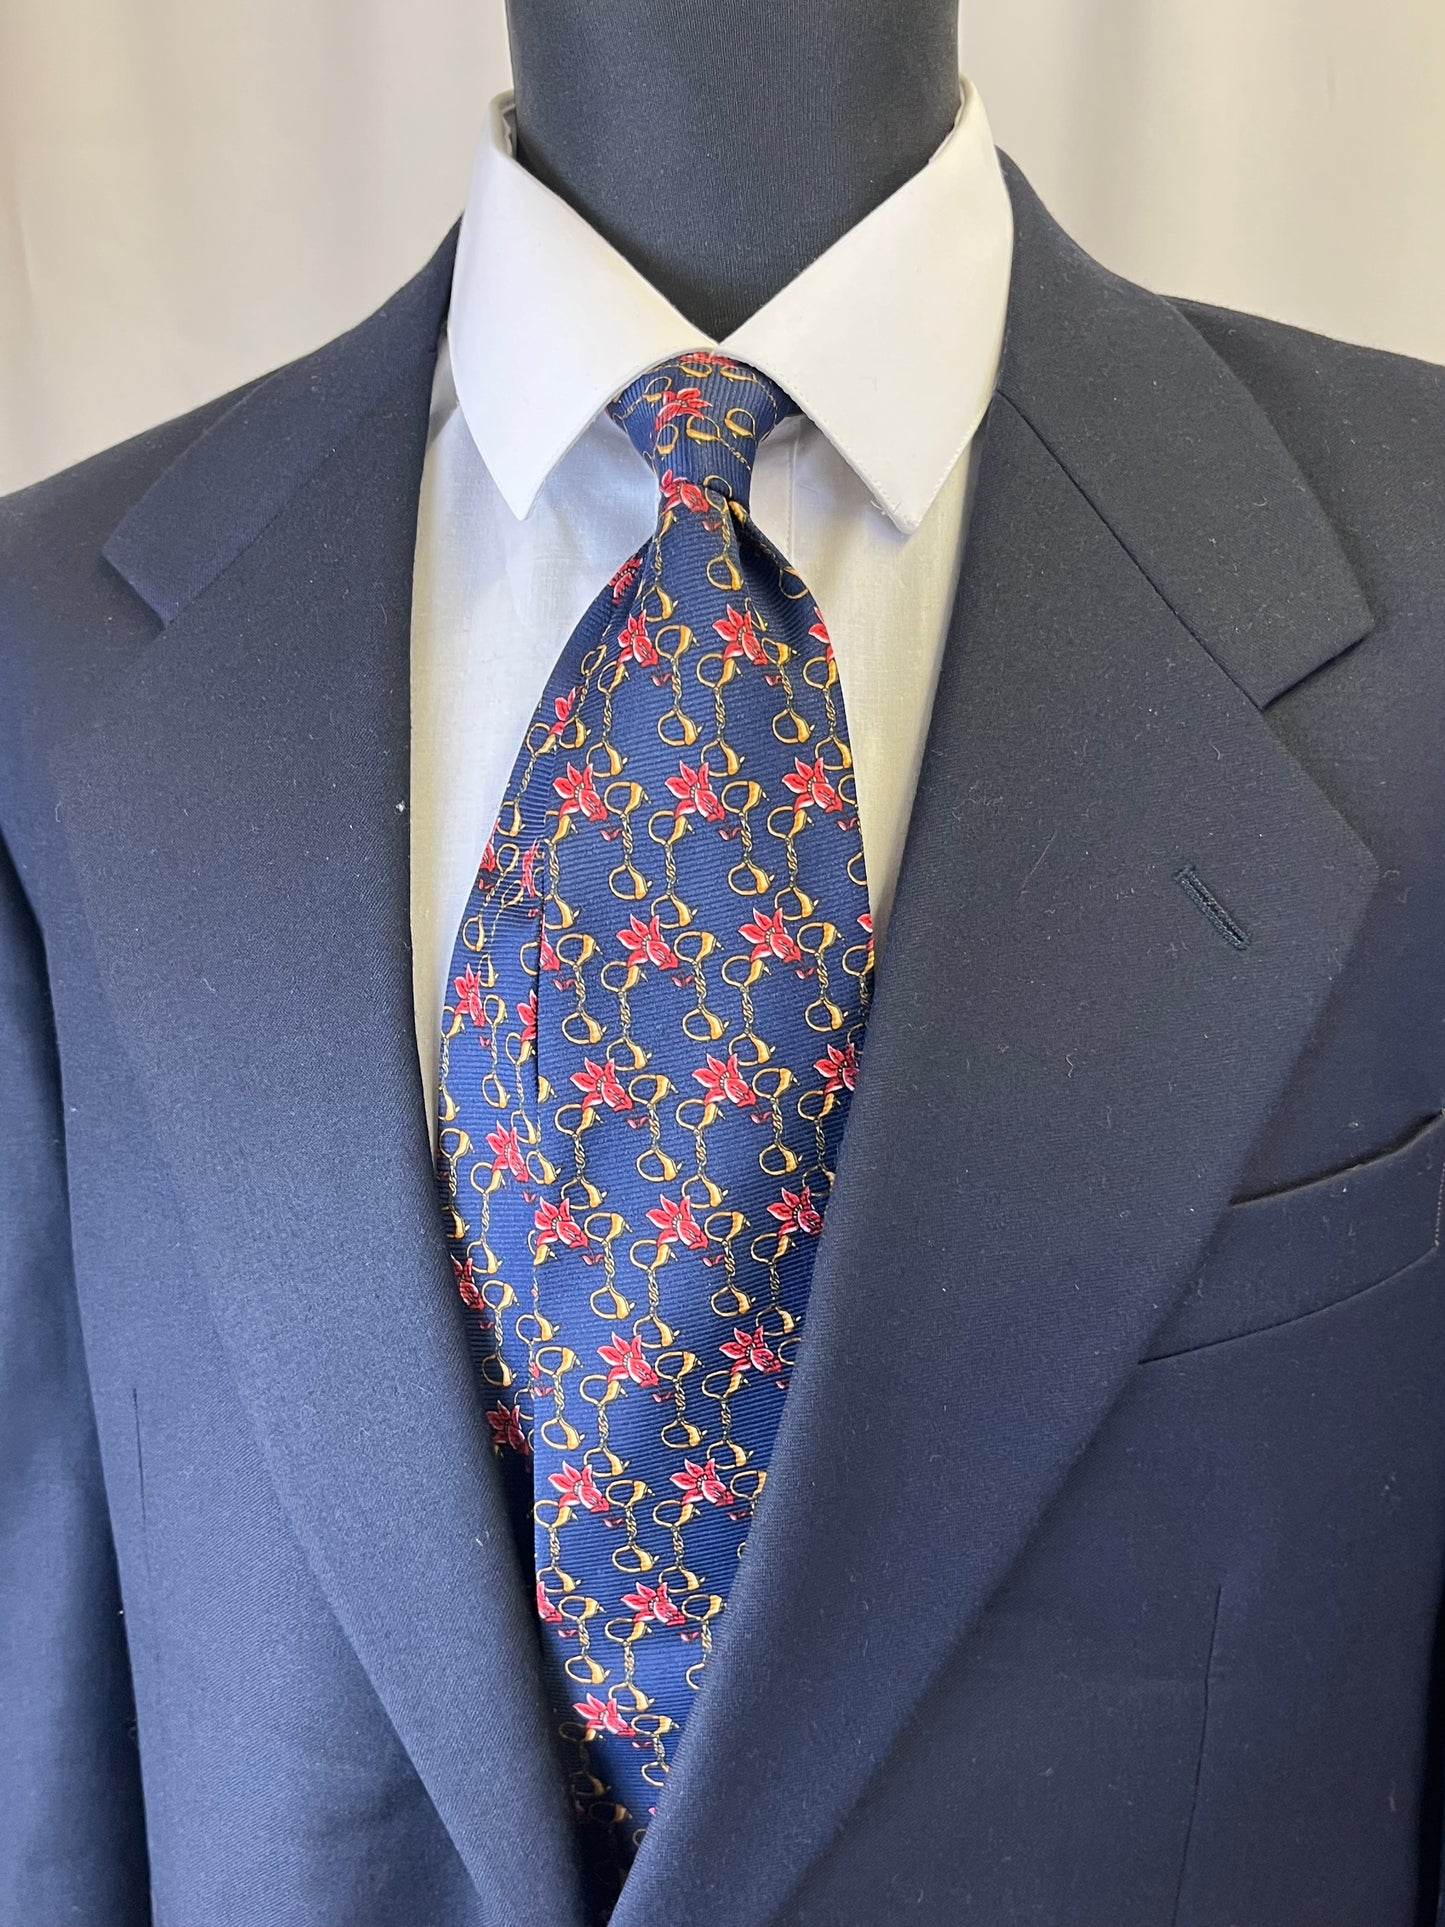 Cravatta anni ‘80 catenelle